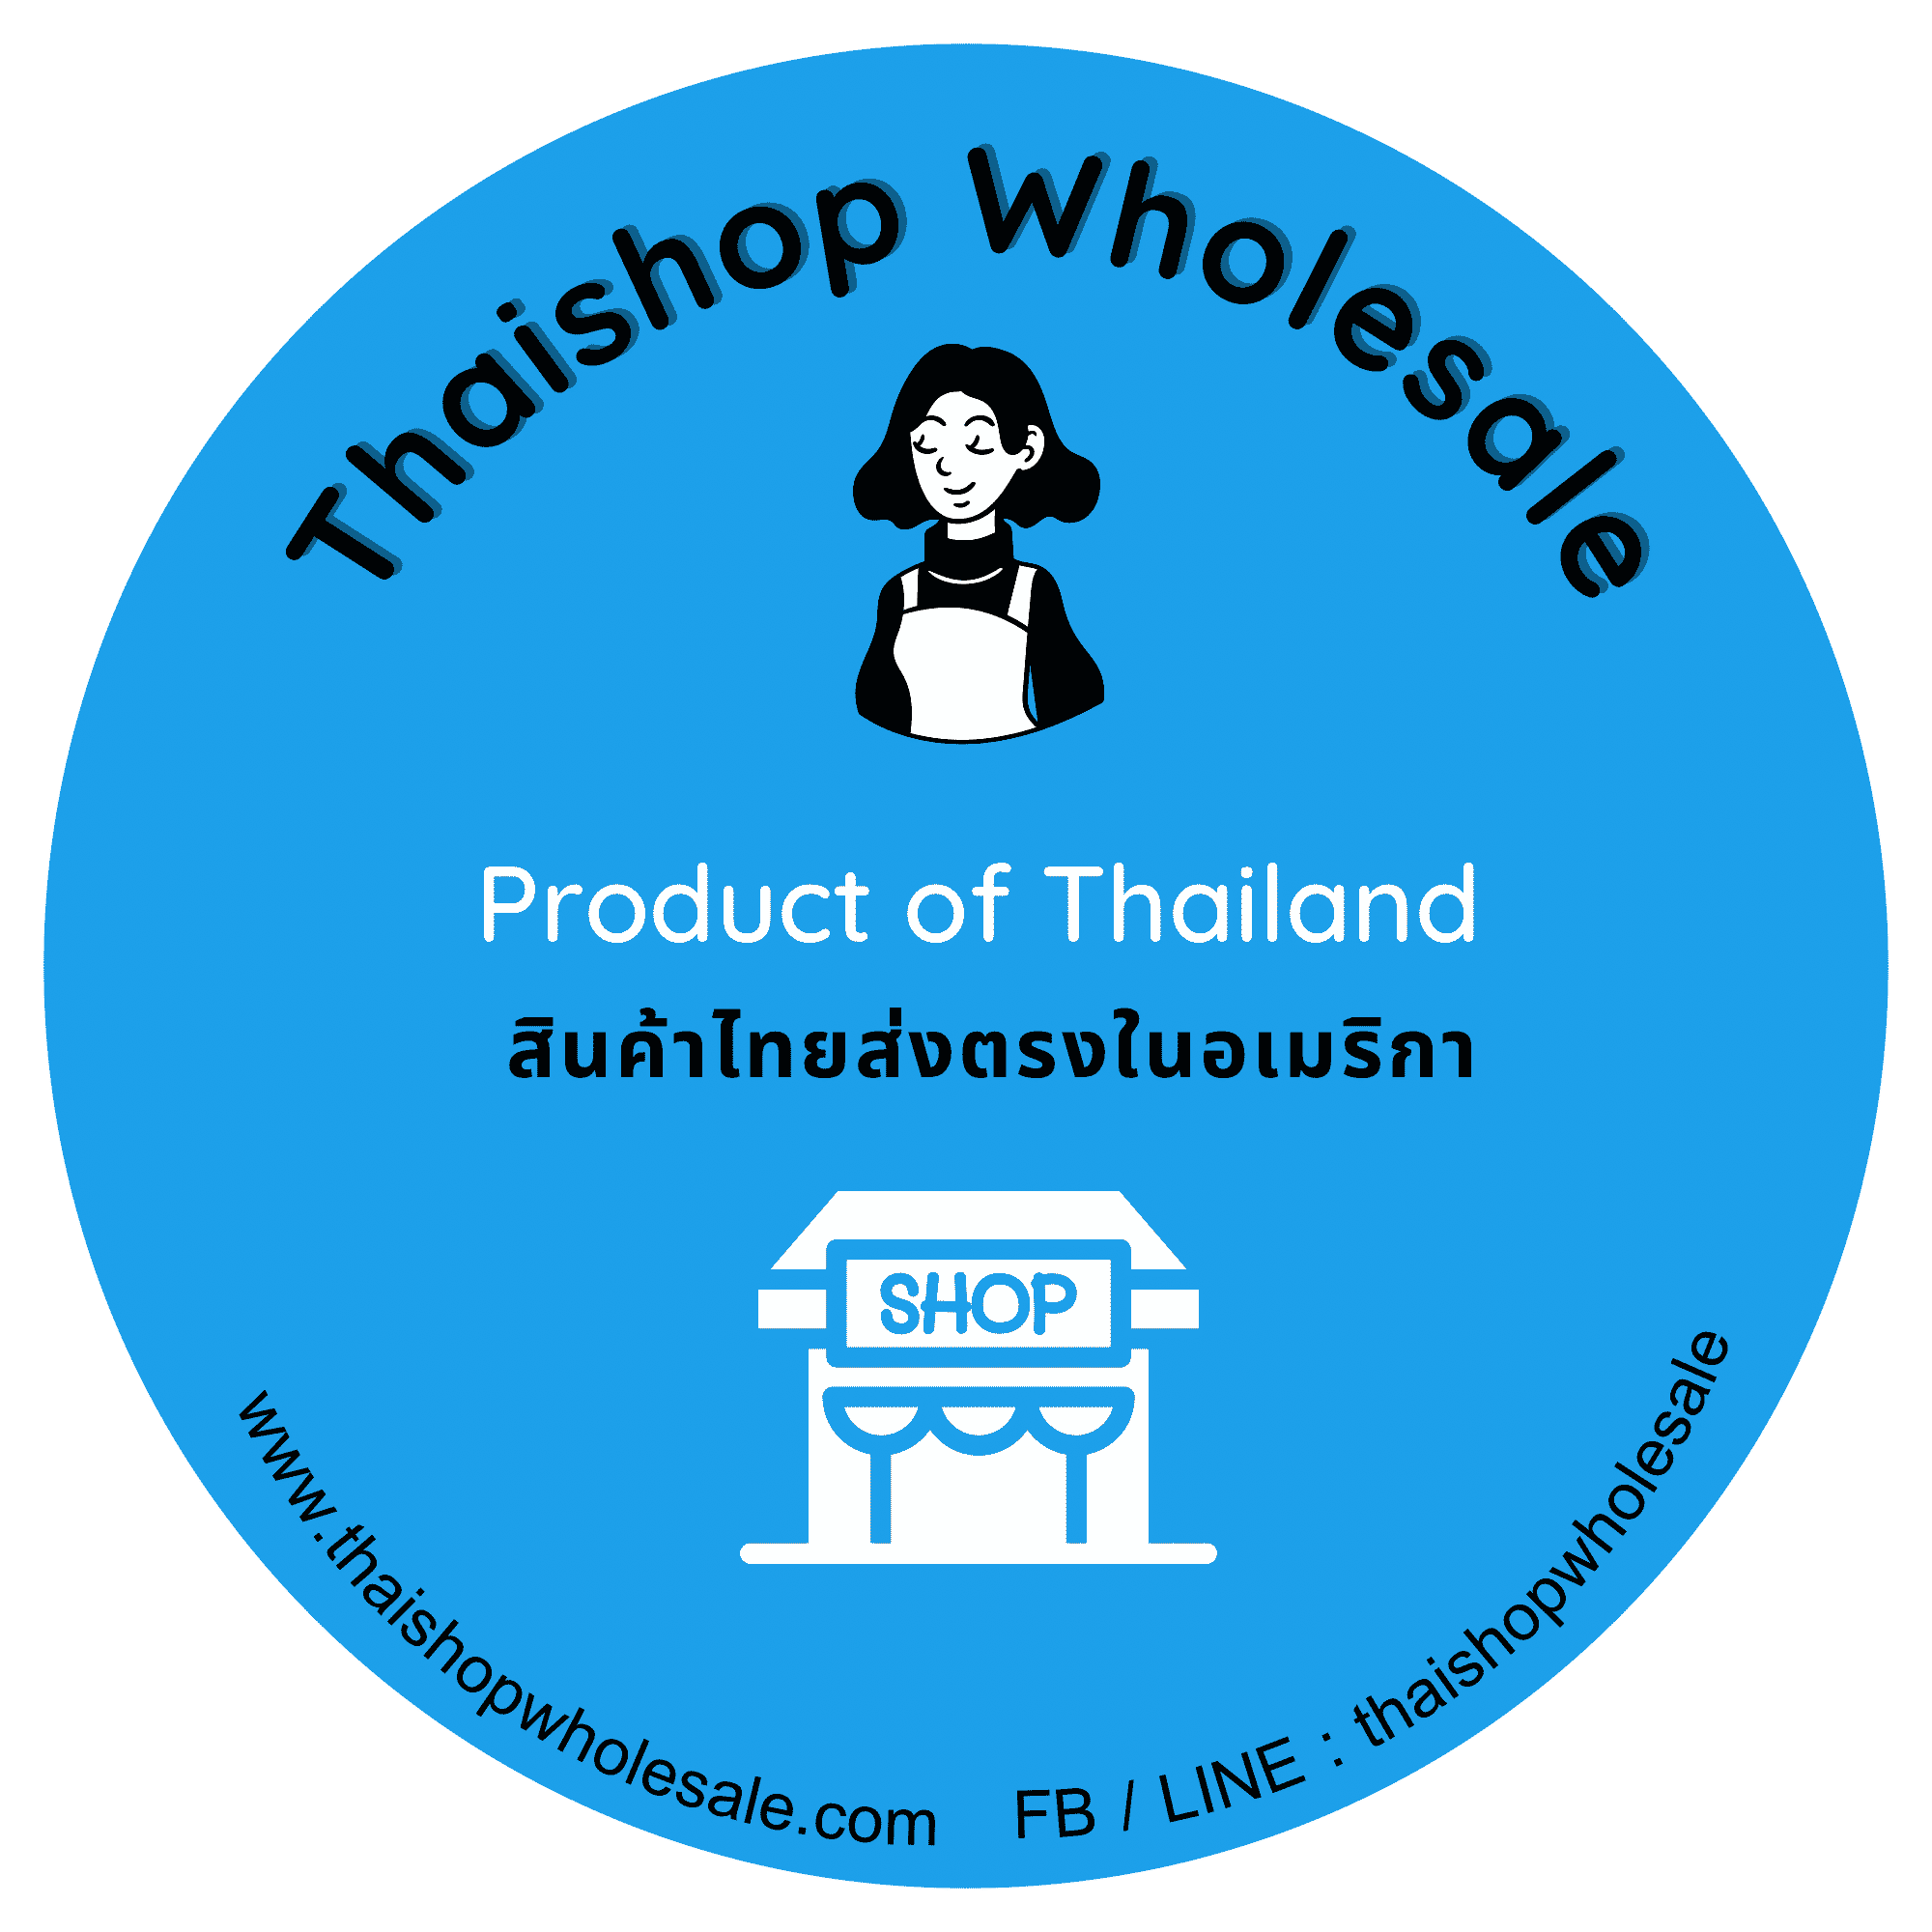 Thaishop Wholesale